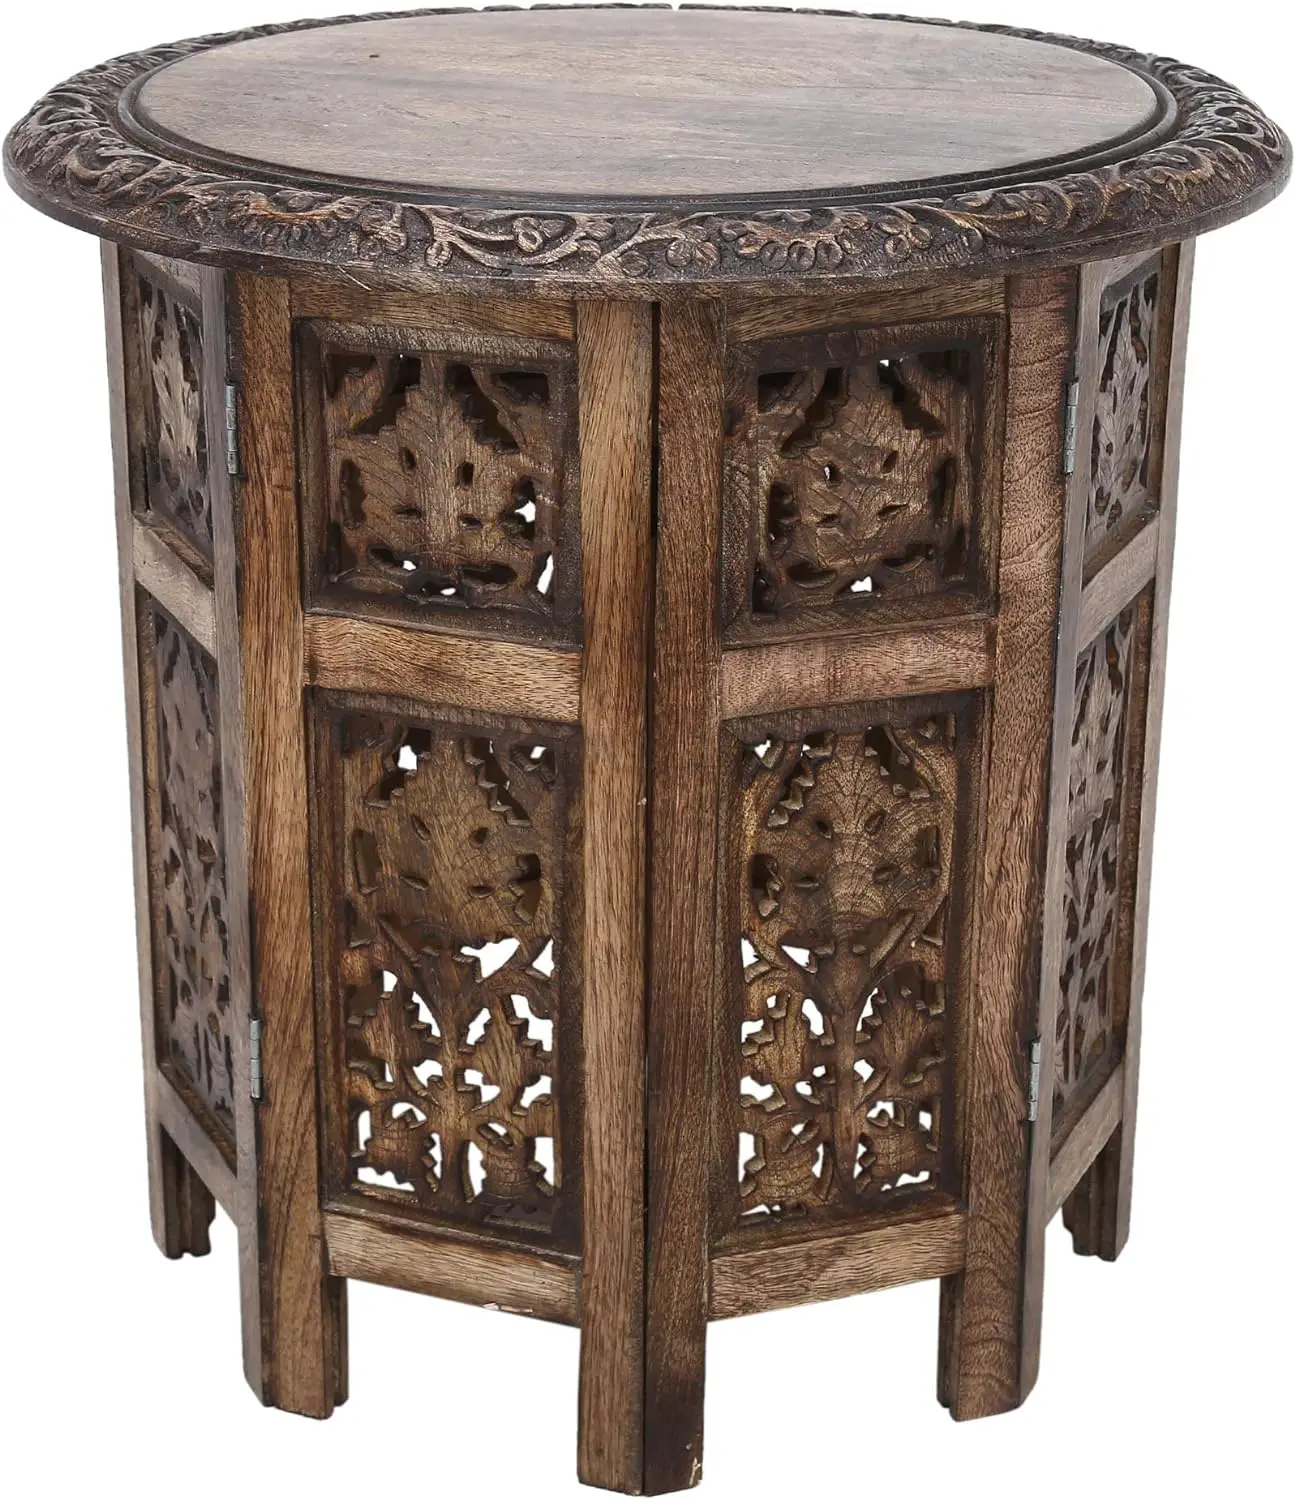 

Круглый журнальный столик в стиле бохо, резной комнатный деревянный боковой индейский декор, Маленький журнальный столик 18 дюймов, маленькая подставка